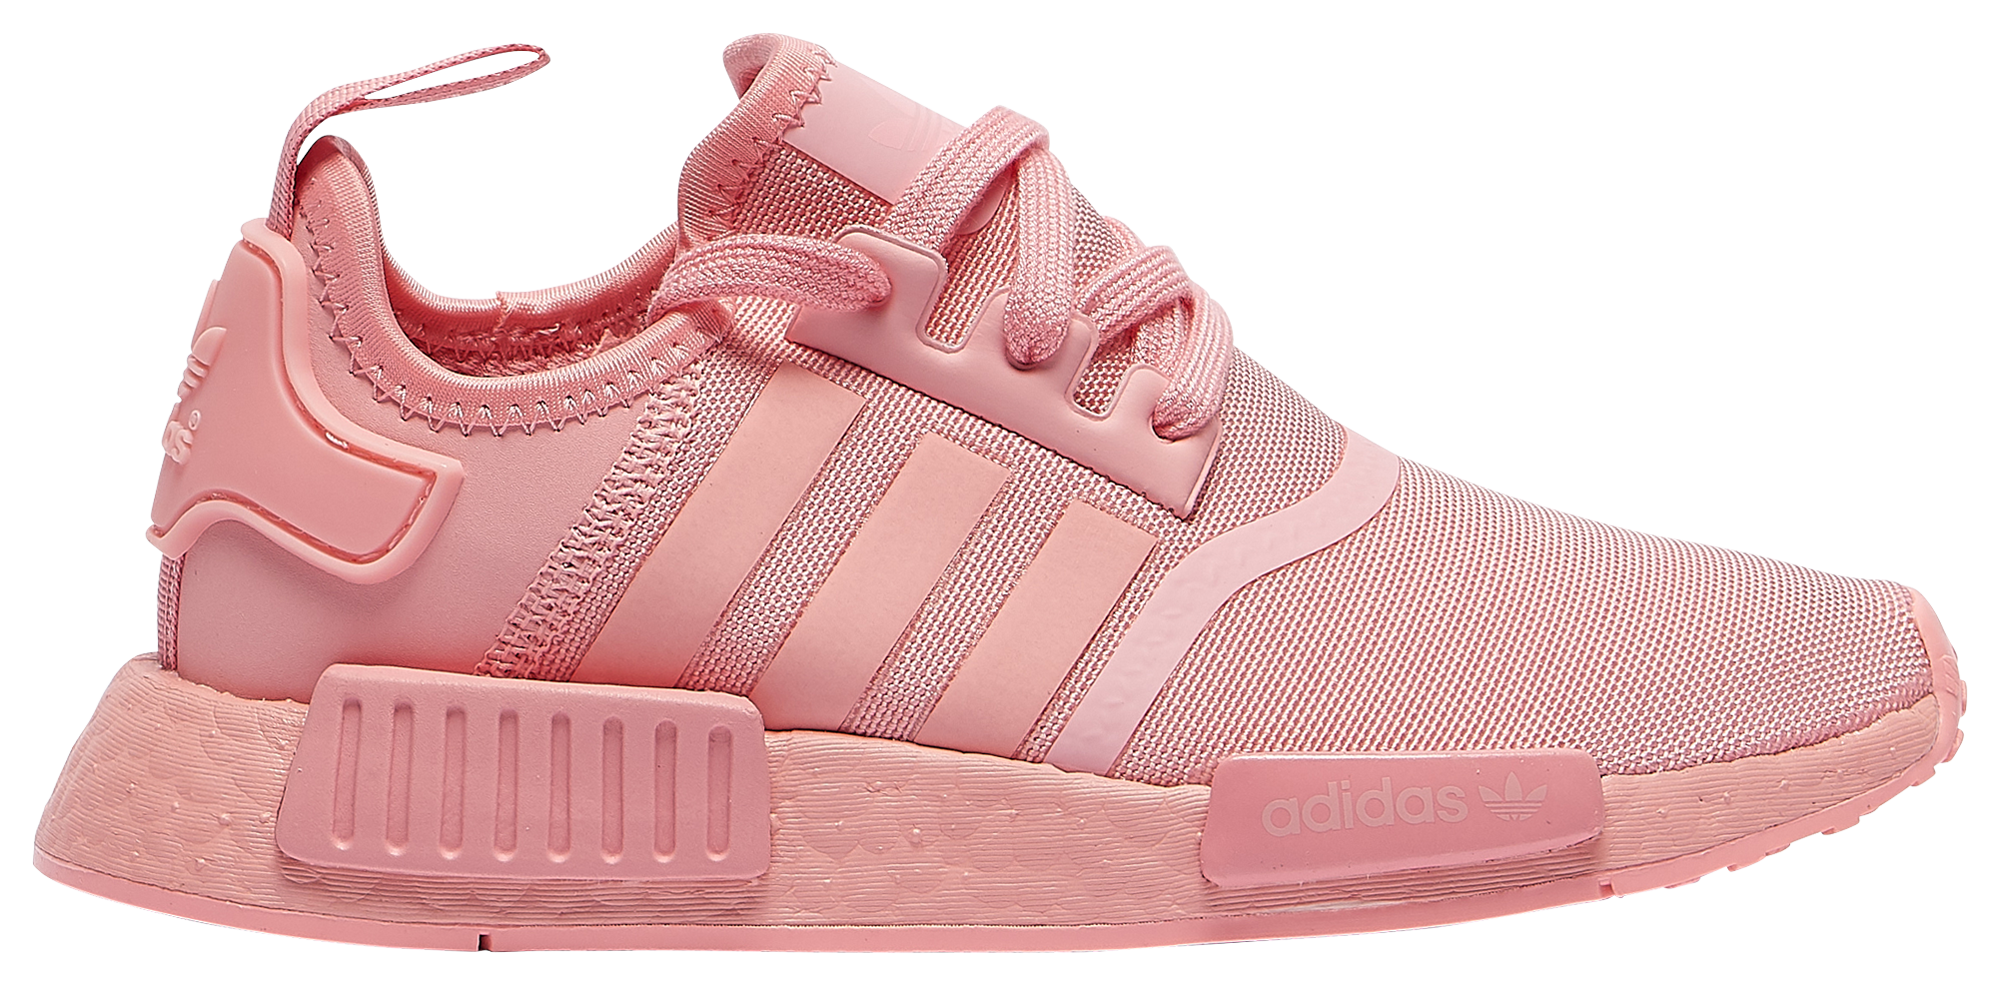 toddler pink adidas shoes